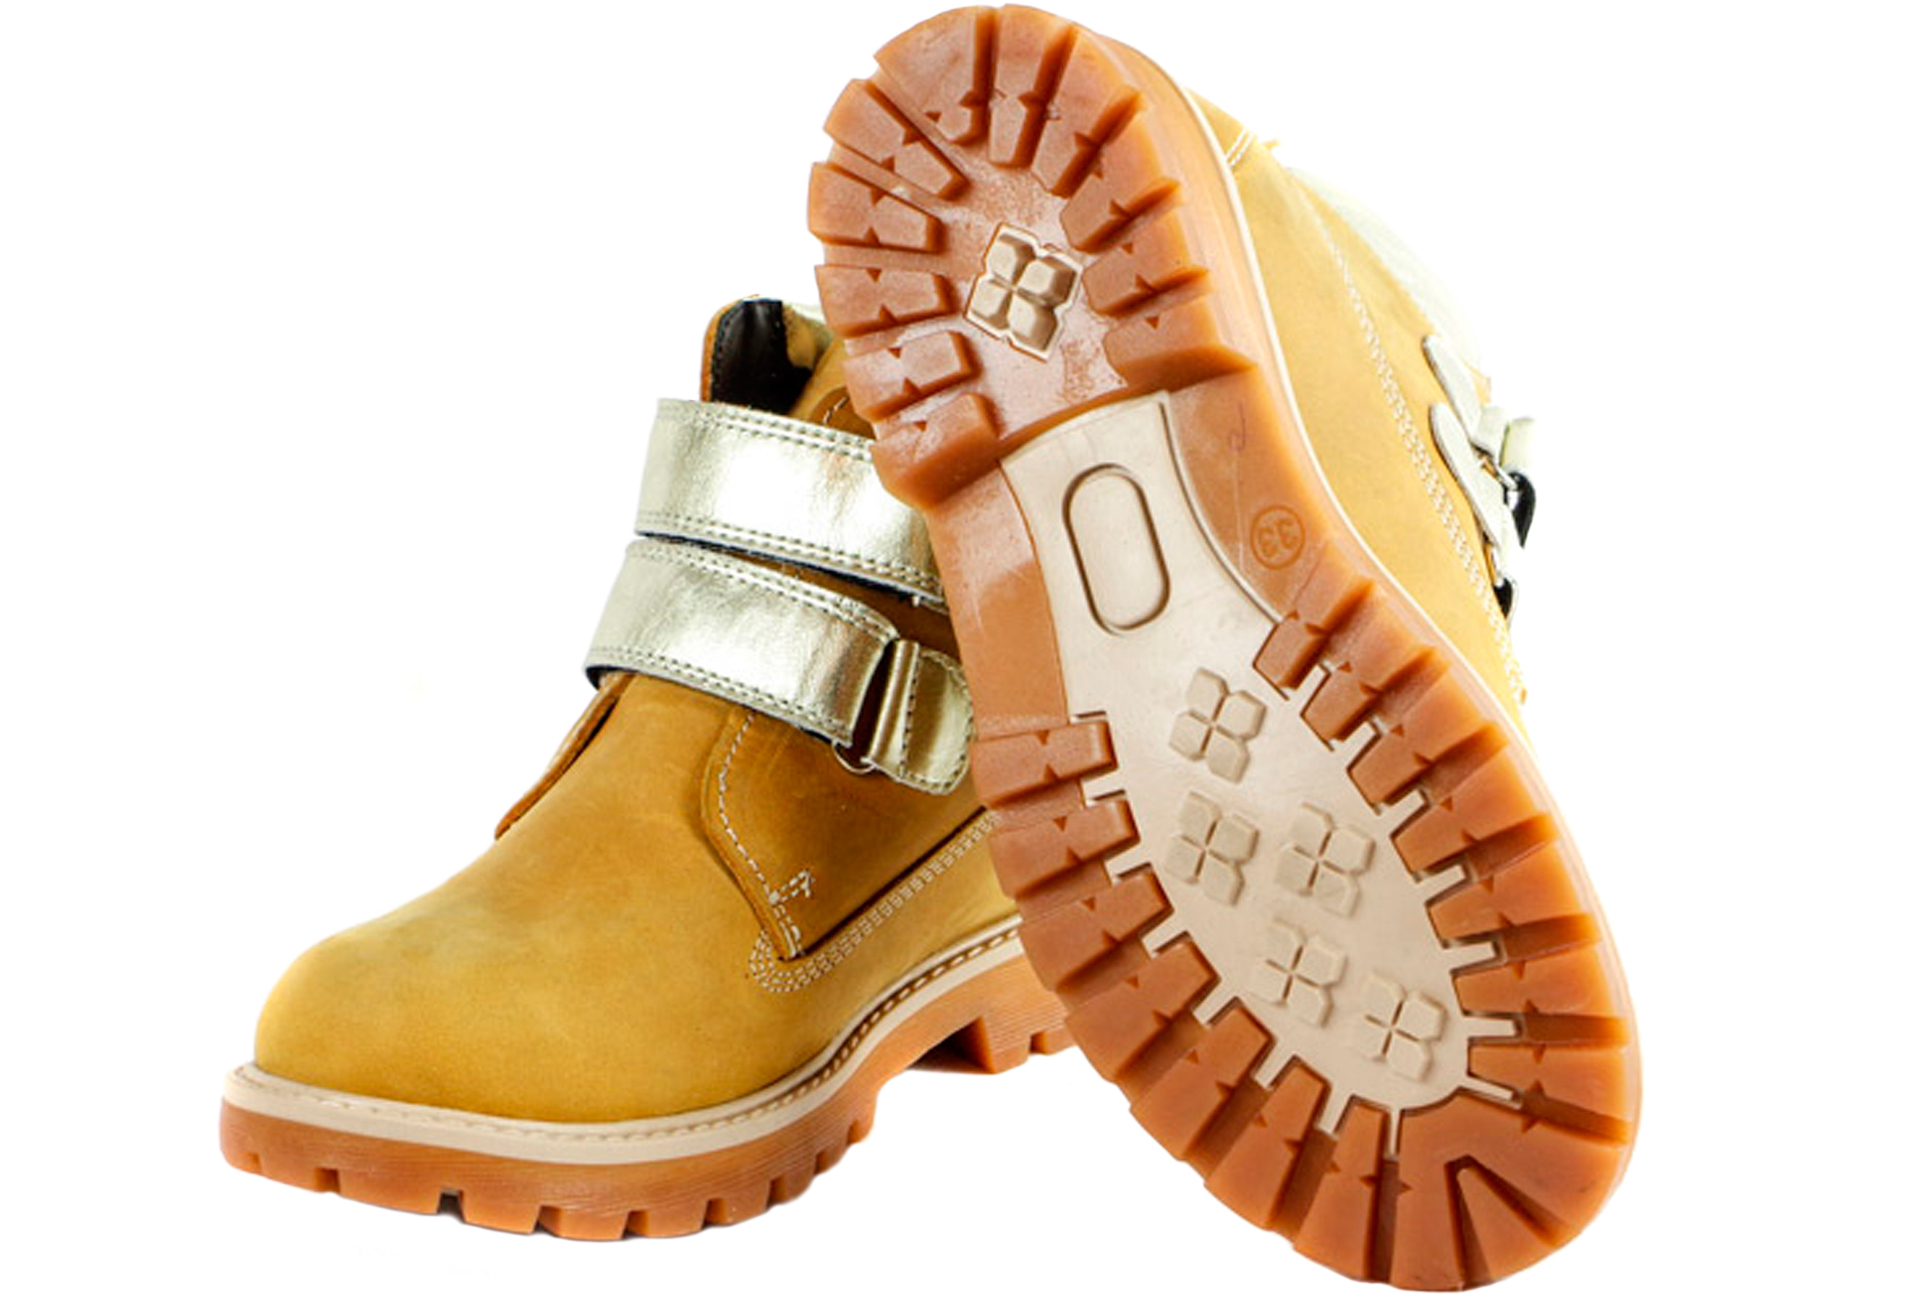 Демисезонные ботинки (1635) материал Нубук, цвет горчичный  для девочки 31-35 размеры – Sole Kids. Фото 4